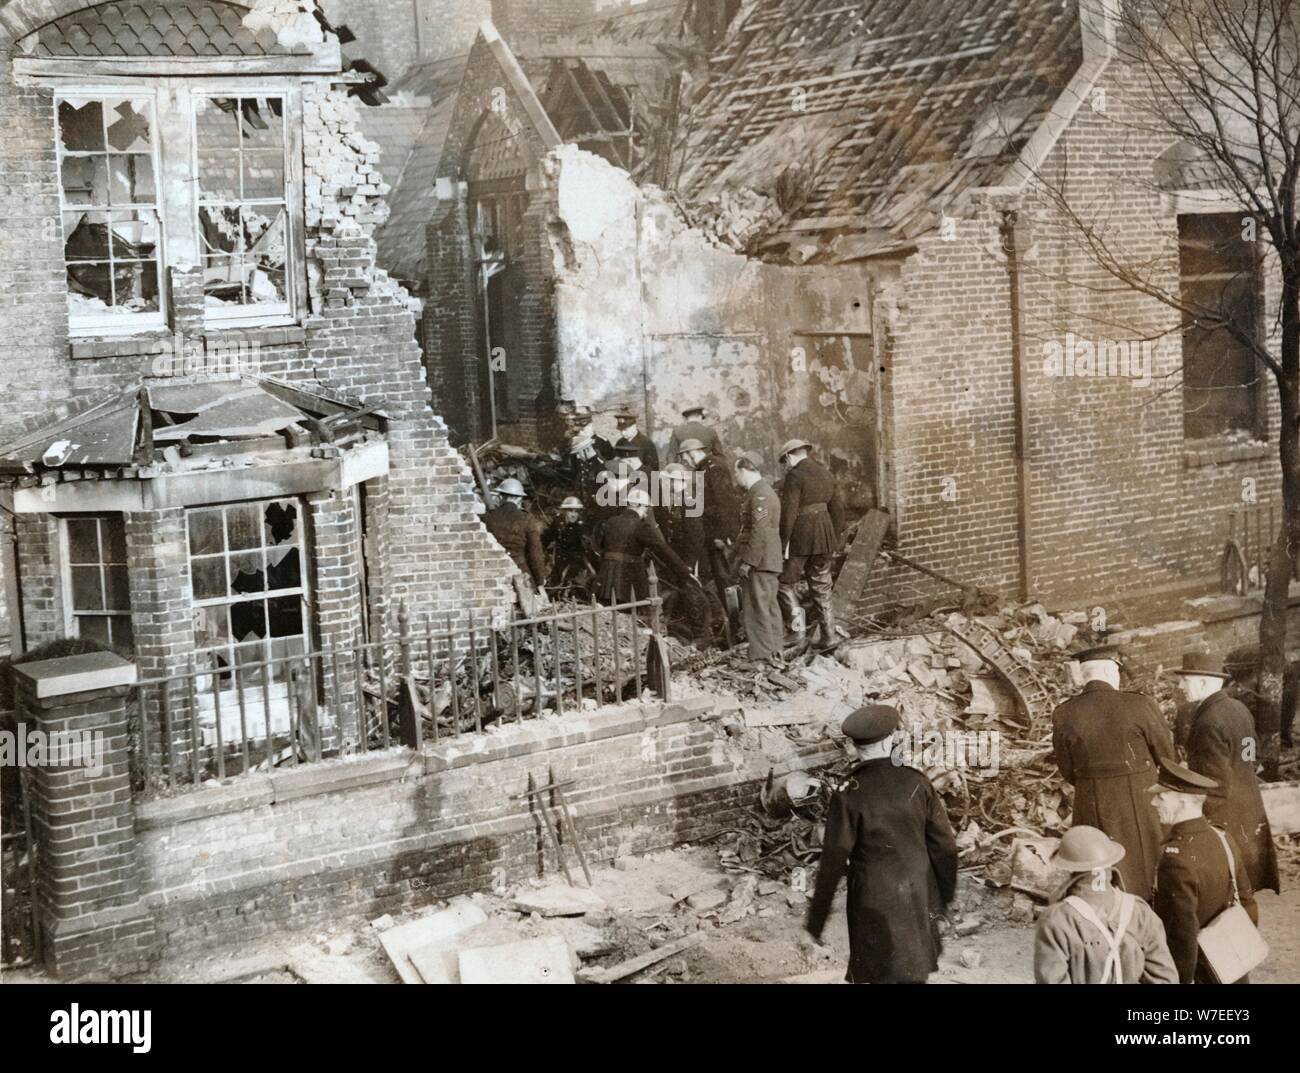 Chambre endommagé par un avion de la RAF s'est écrasé, traverser Leytonstone, Londres, la seconde guerre mondiale, 11 février 1942. Artiste : Inconnu Banque D'Images